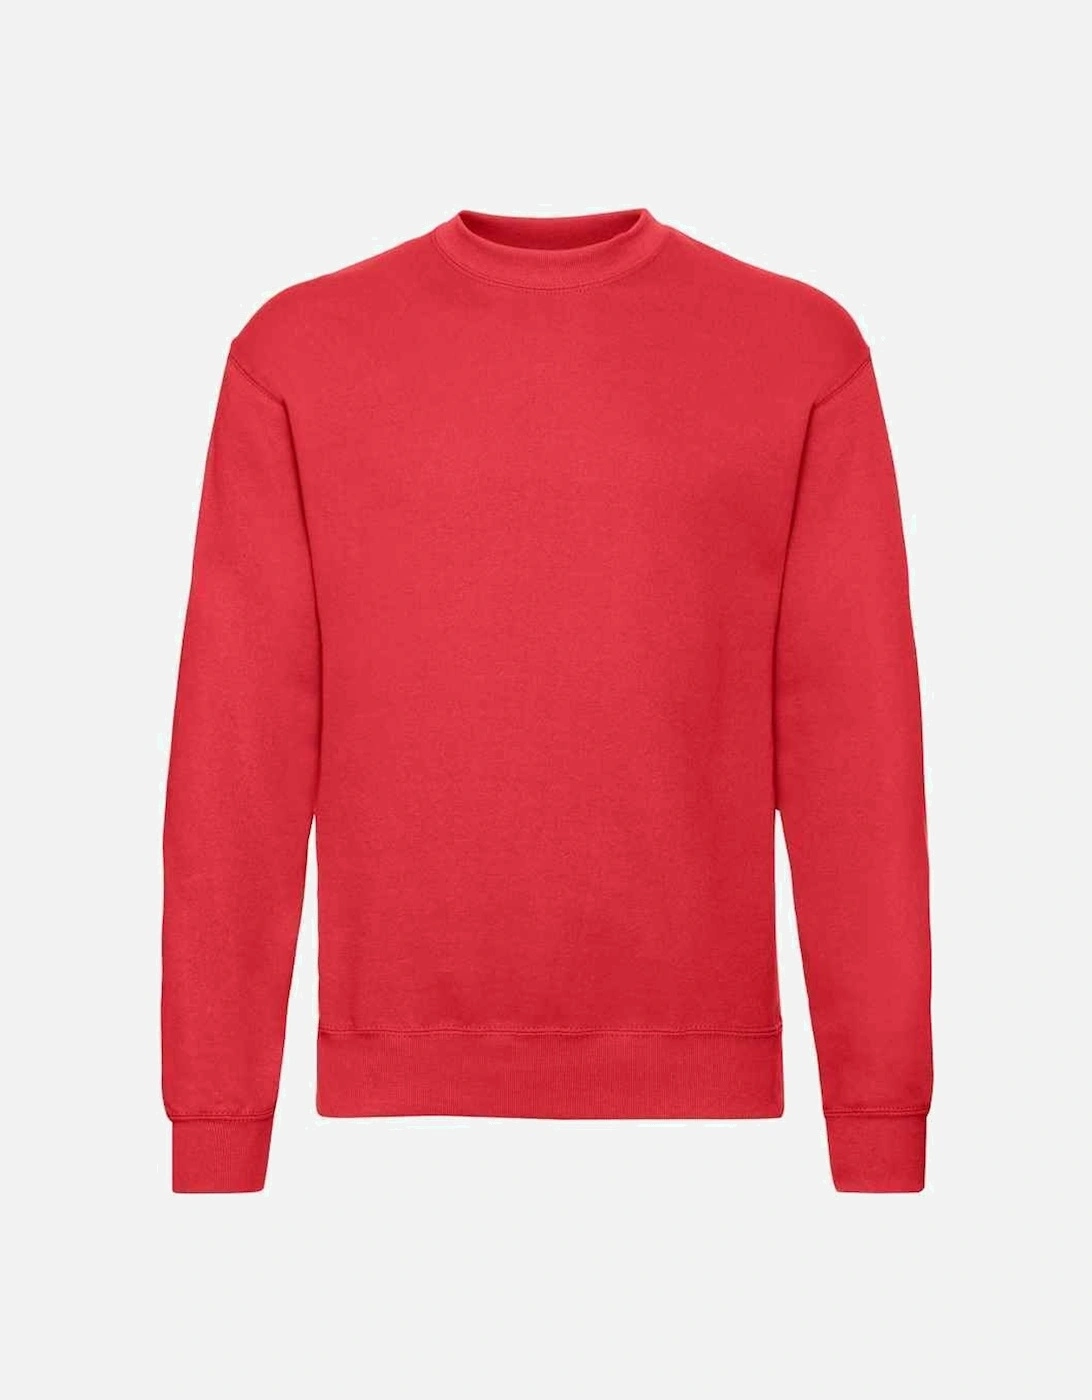 Unisex Adult Classic Drop Shoulder Sweatshirt, 3 of 2